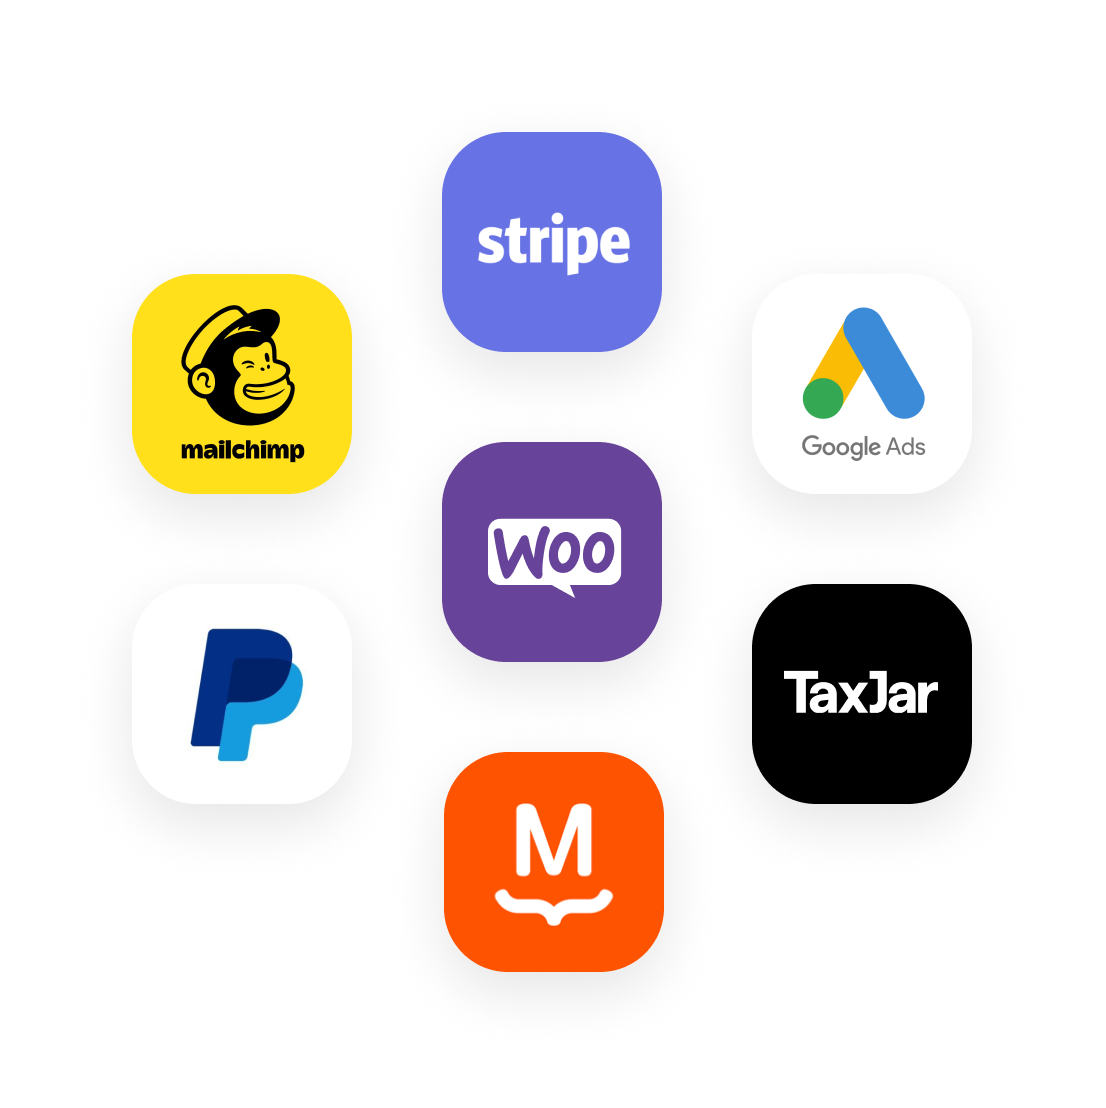 โลโก้สำหรับผลิตภัณฑ์ที่เลือกเข้ากันได้กับ WooCommerce: Stripe, Google Ads, TaxJar, MailChimp, PayPal และ MailPoet